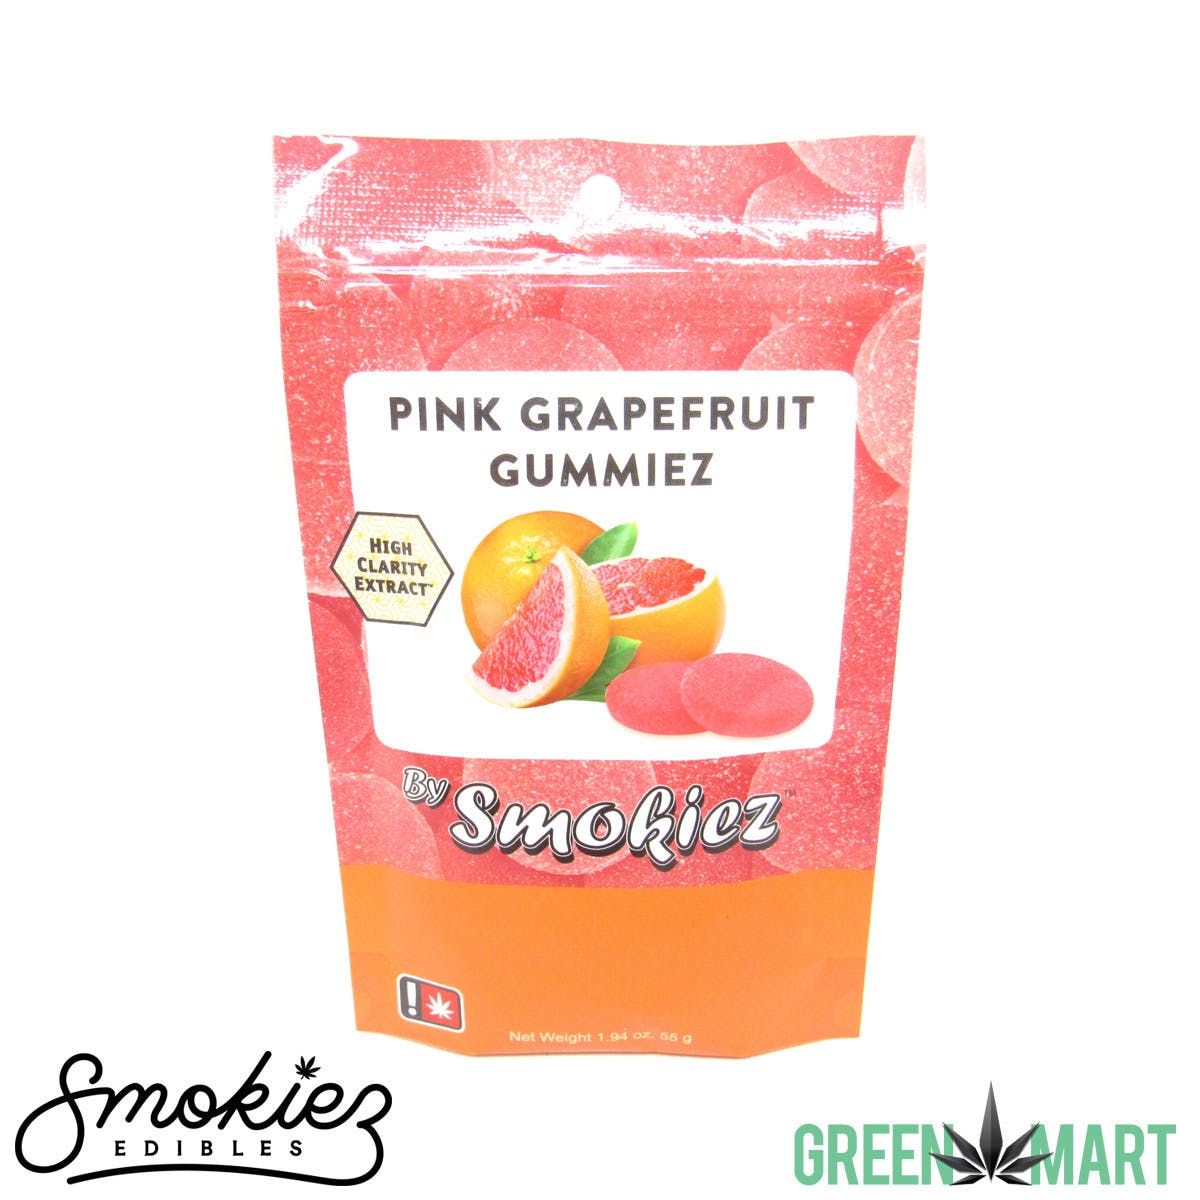 Smokiez Gummiez - Pink Grapefruit